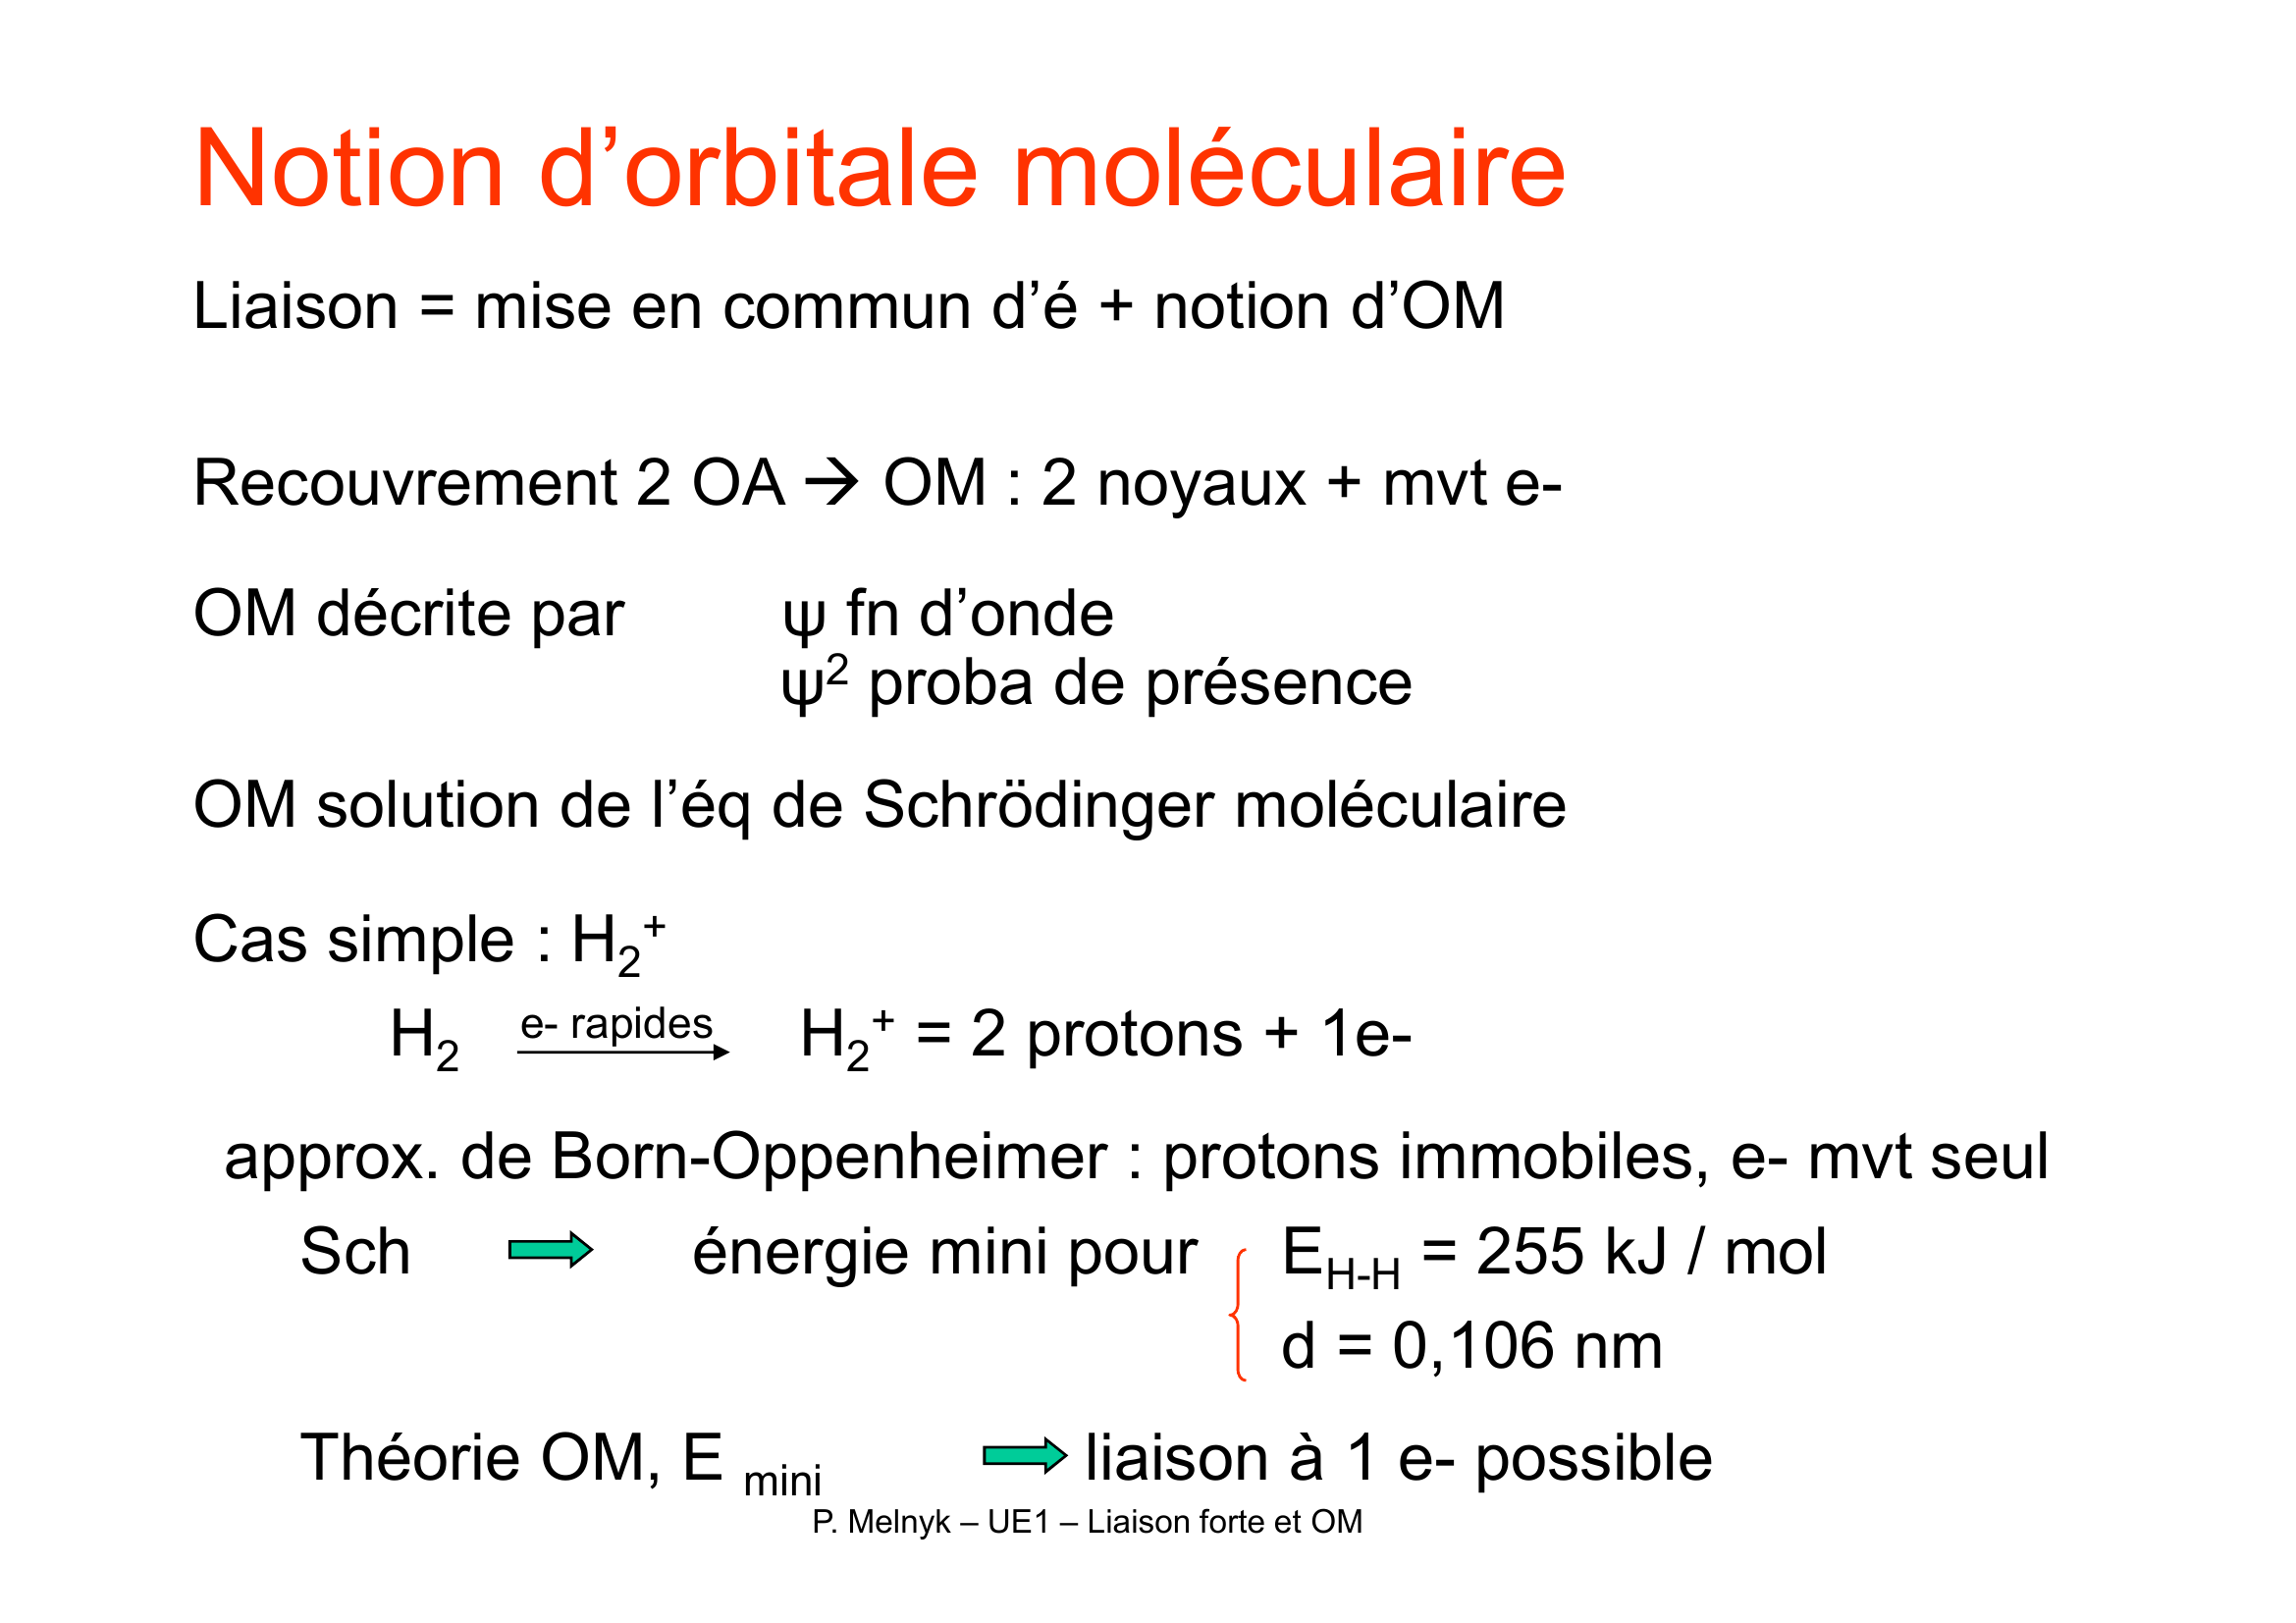 Prévisualisation du document Liaison chimique forte

o Orbitales moléculaires et molécules diatomiques
o Orbitales moléculaires et molécules polyatomiques

P.